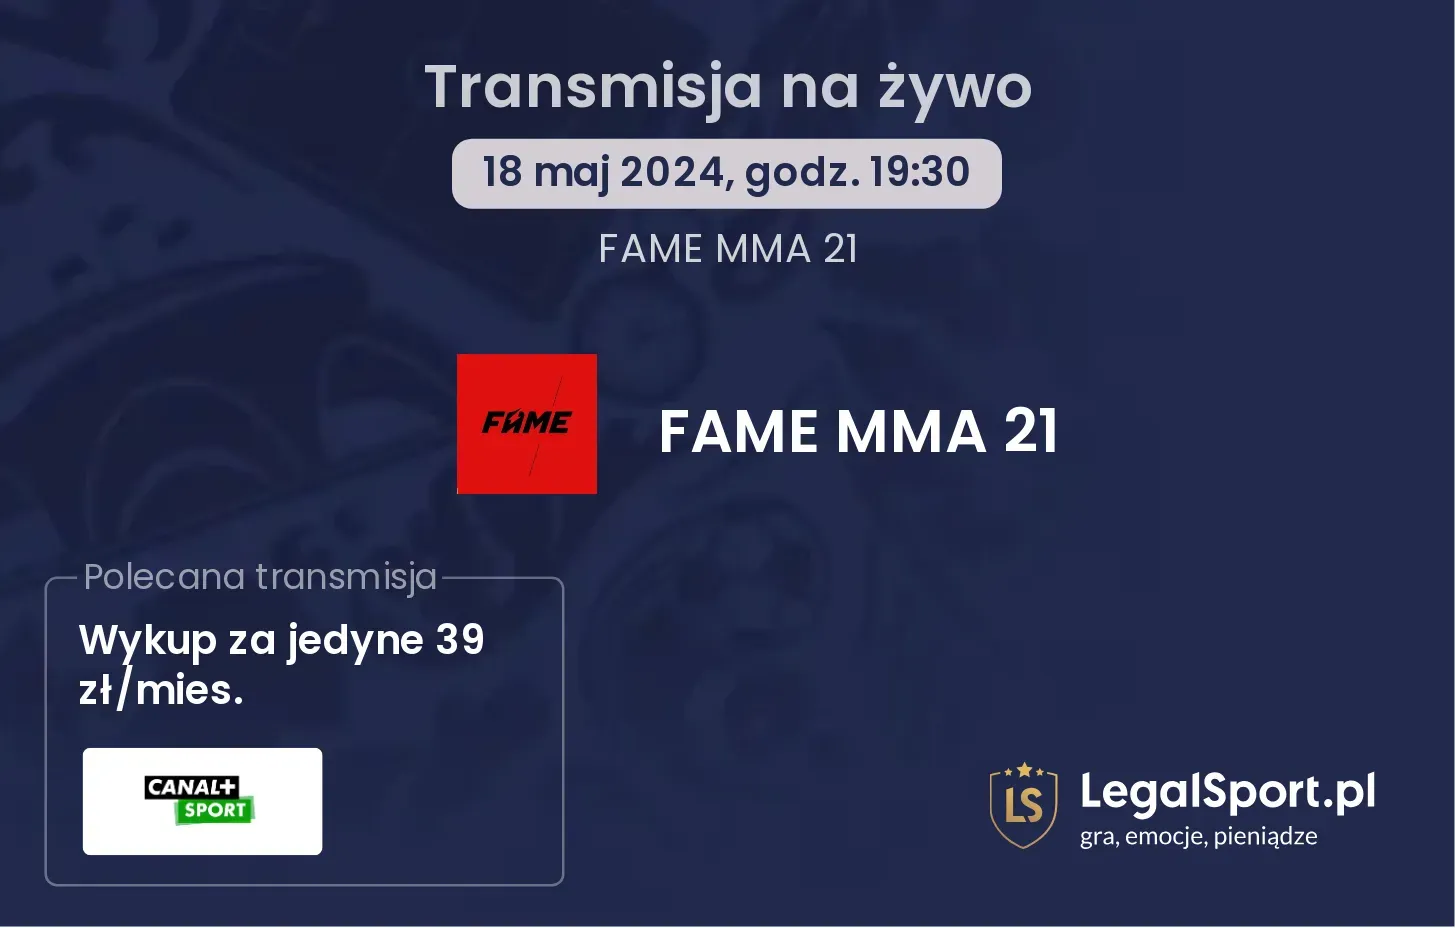 FAME MMA 21 gdzie oglądać?